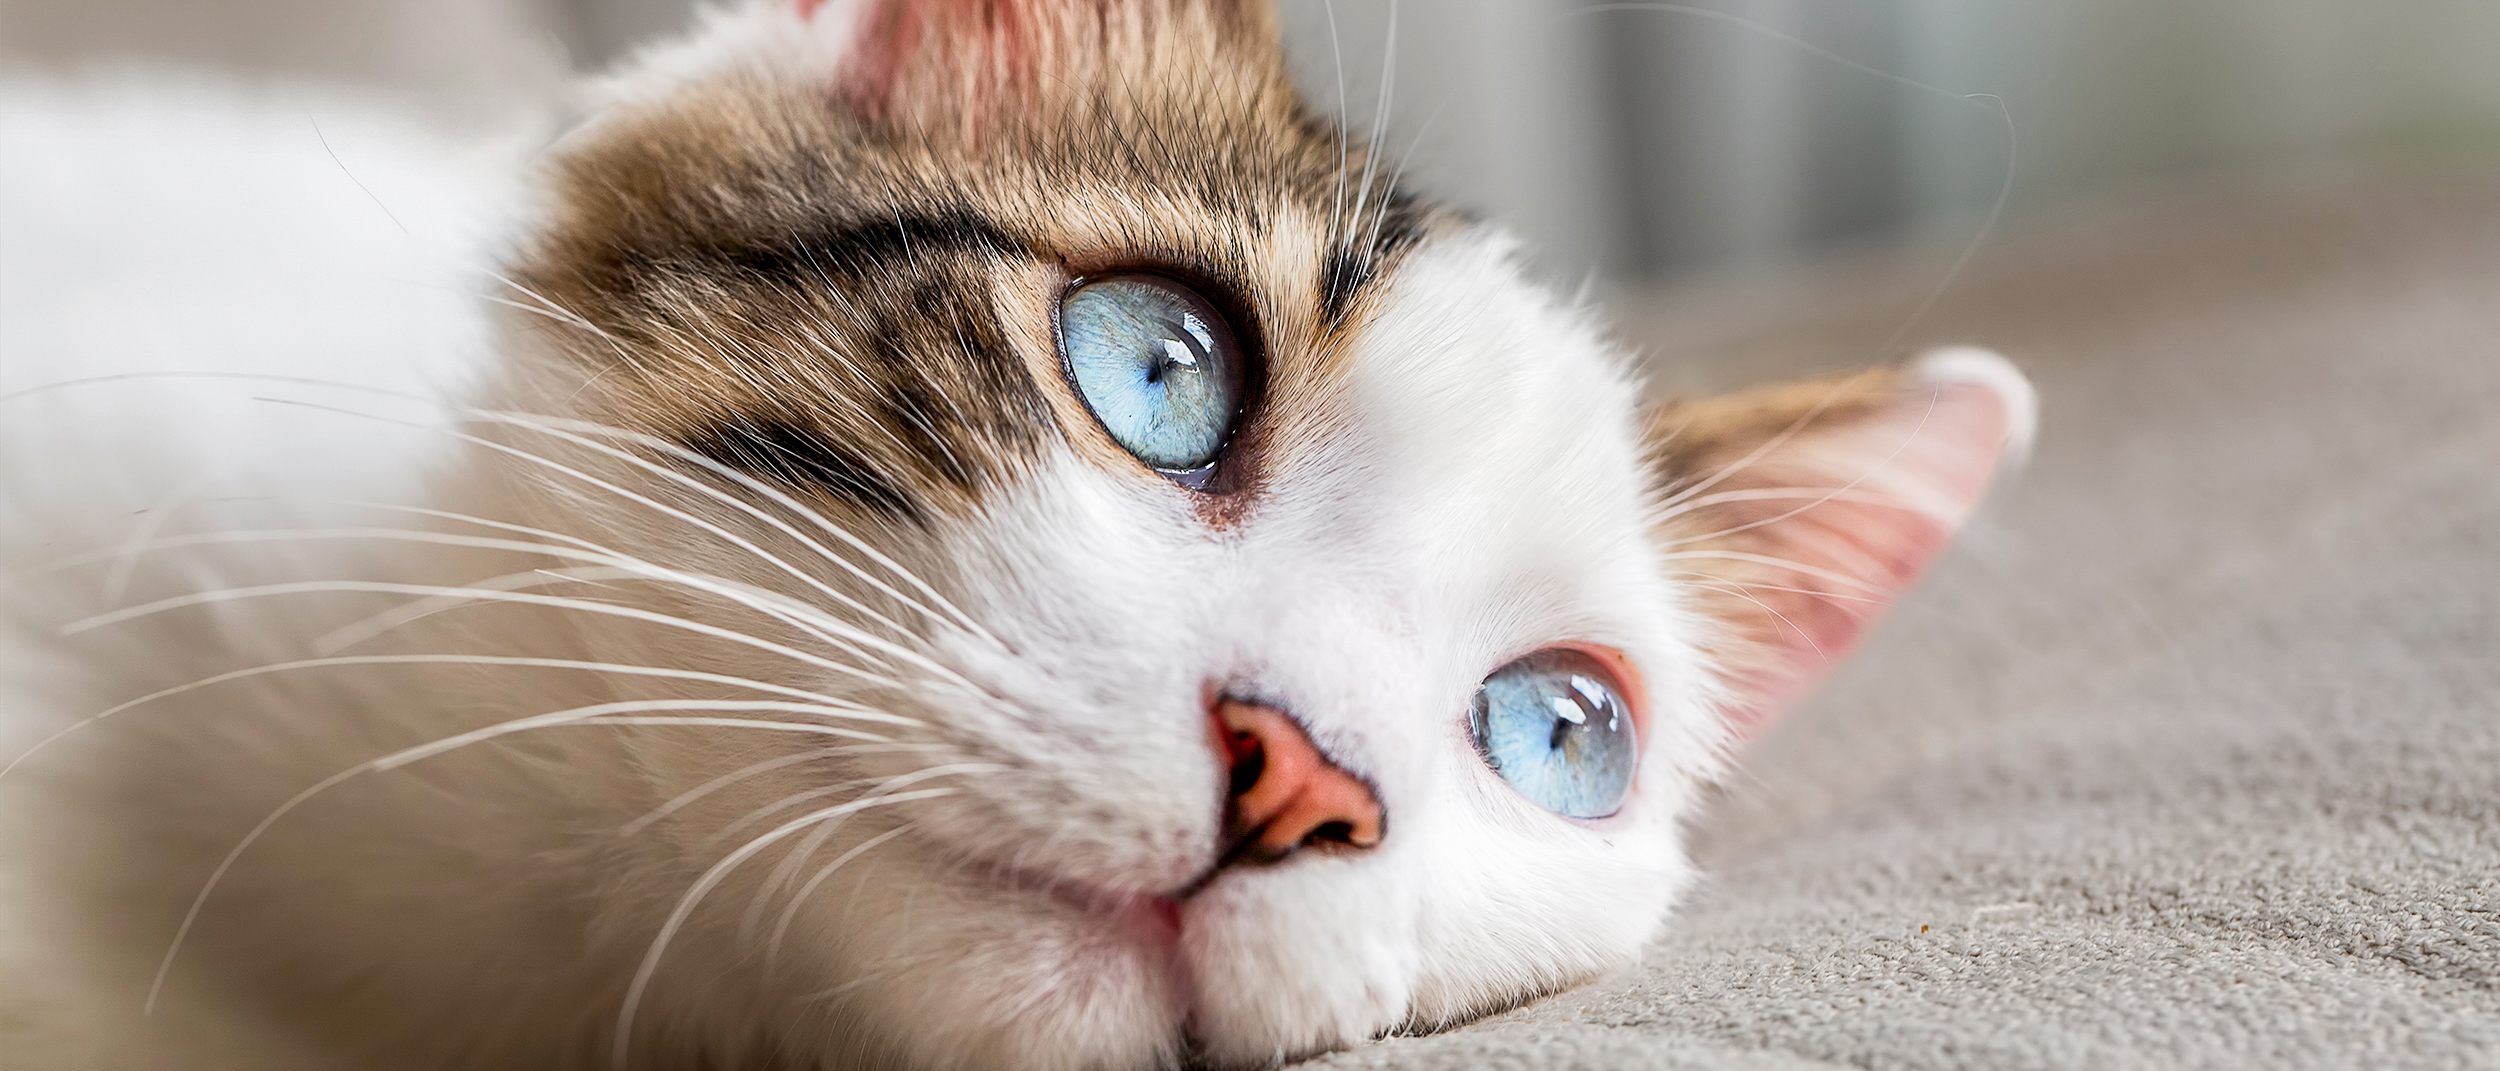 Voksen katt som ligger innendørs på et kremfarget teppe.